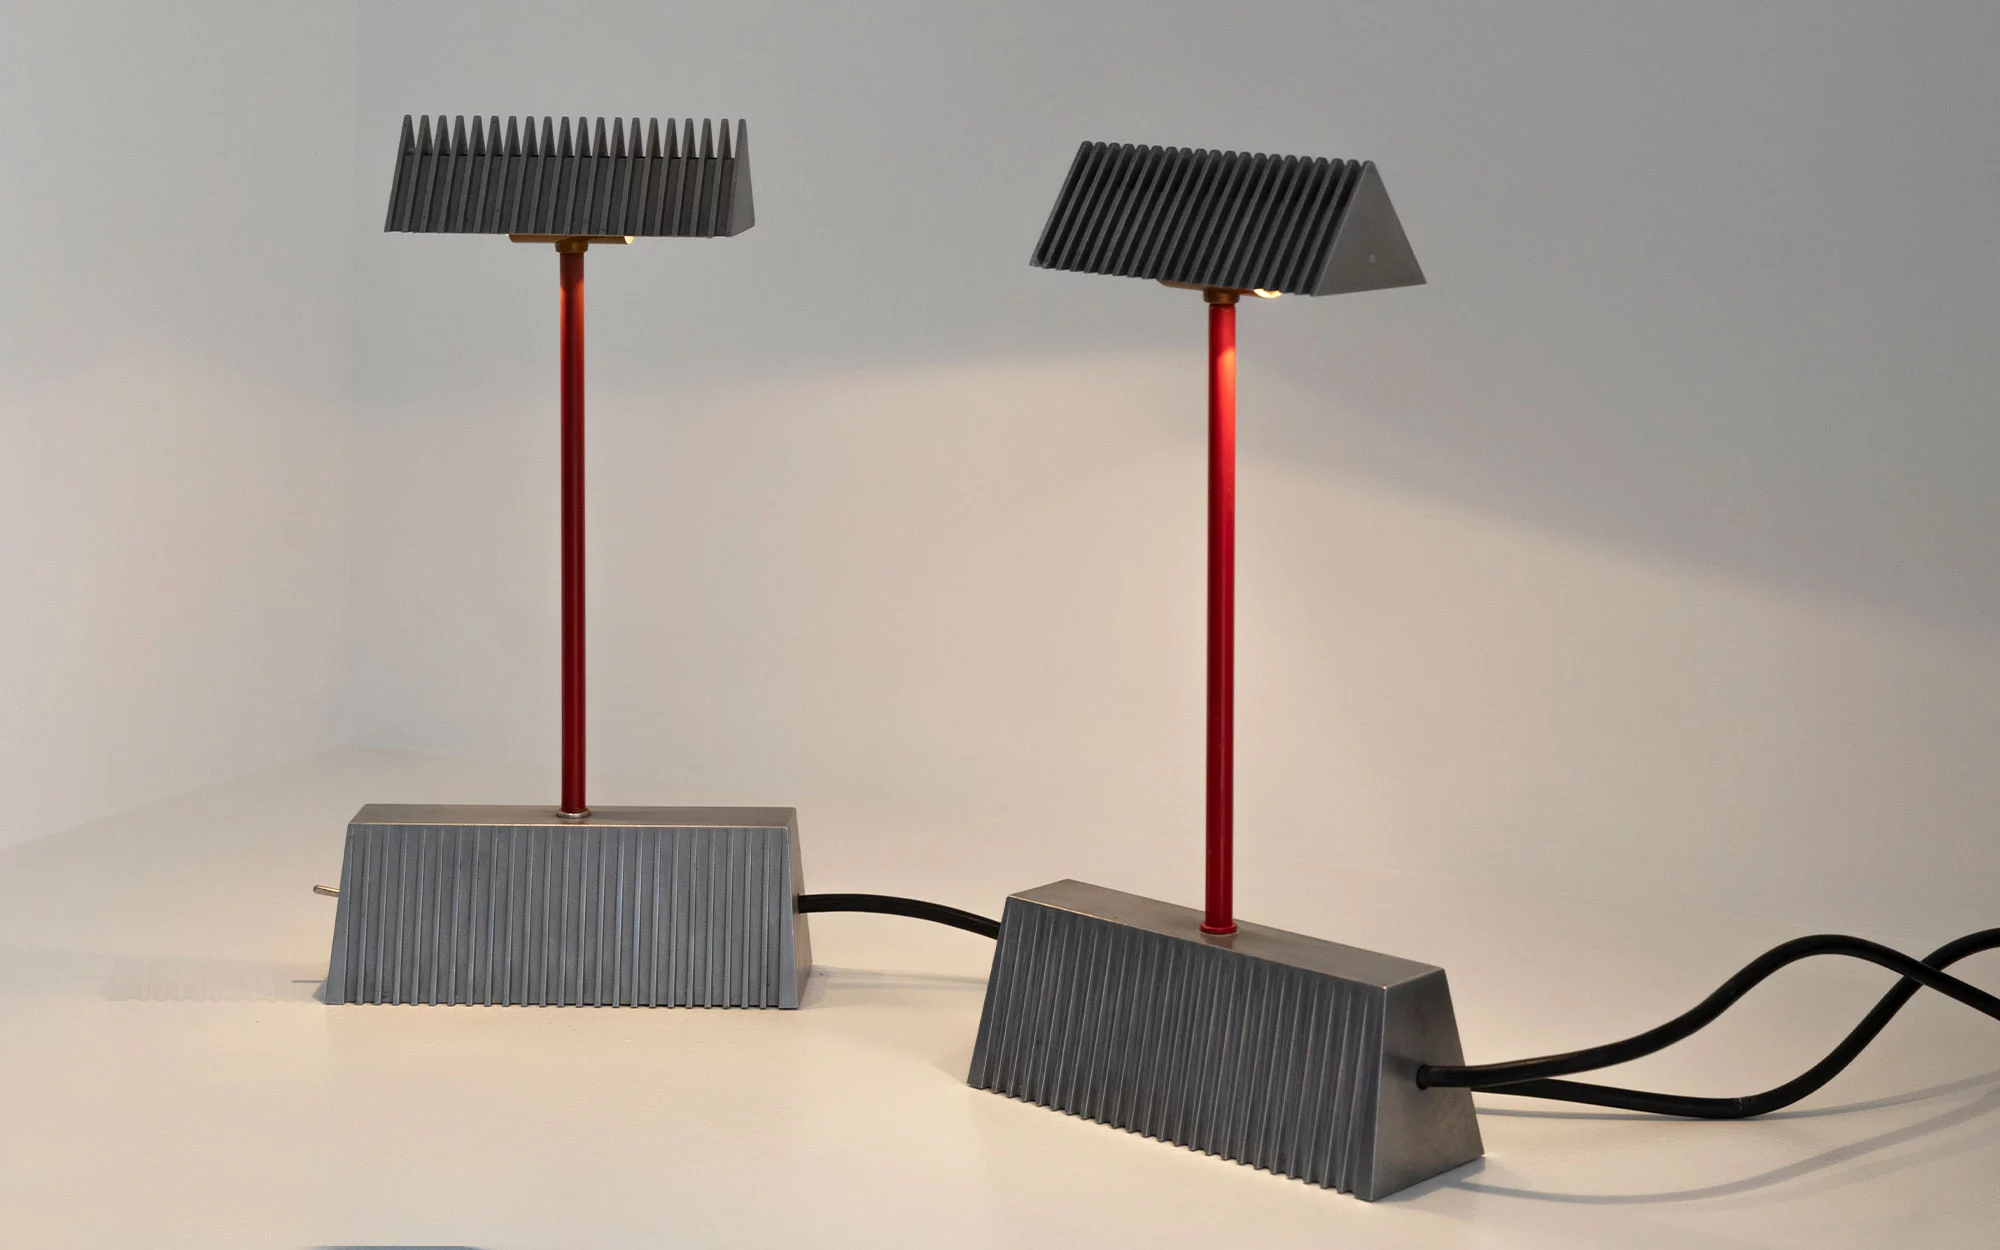 Table lamp 'Scintilla' - Piero Castiglioni - table-light - Galerie kreo